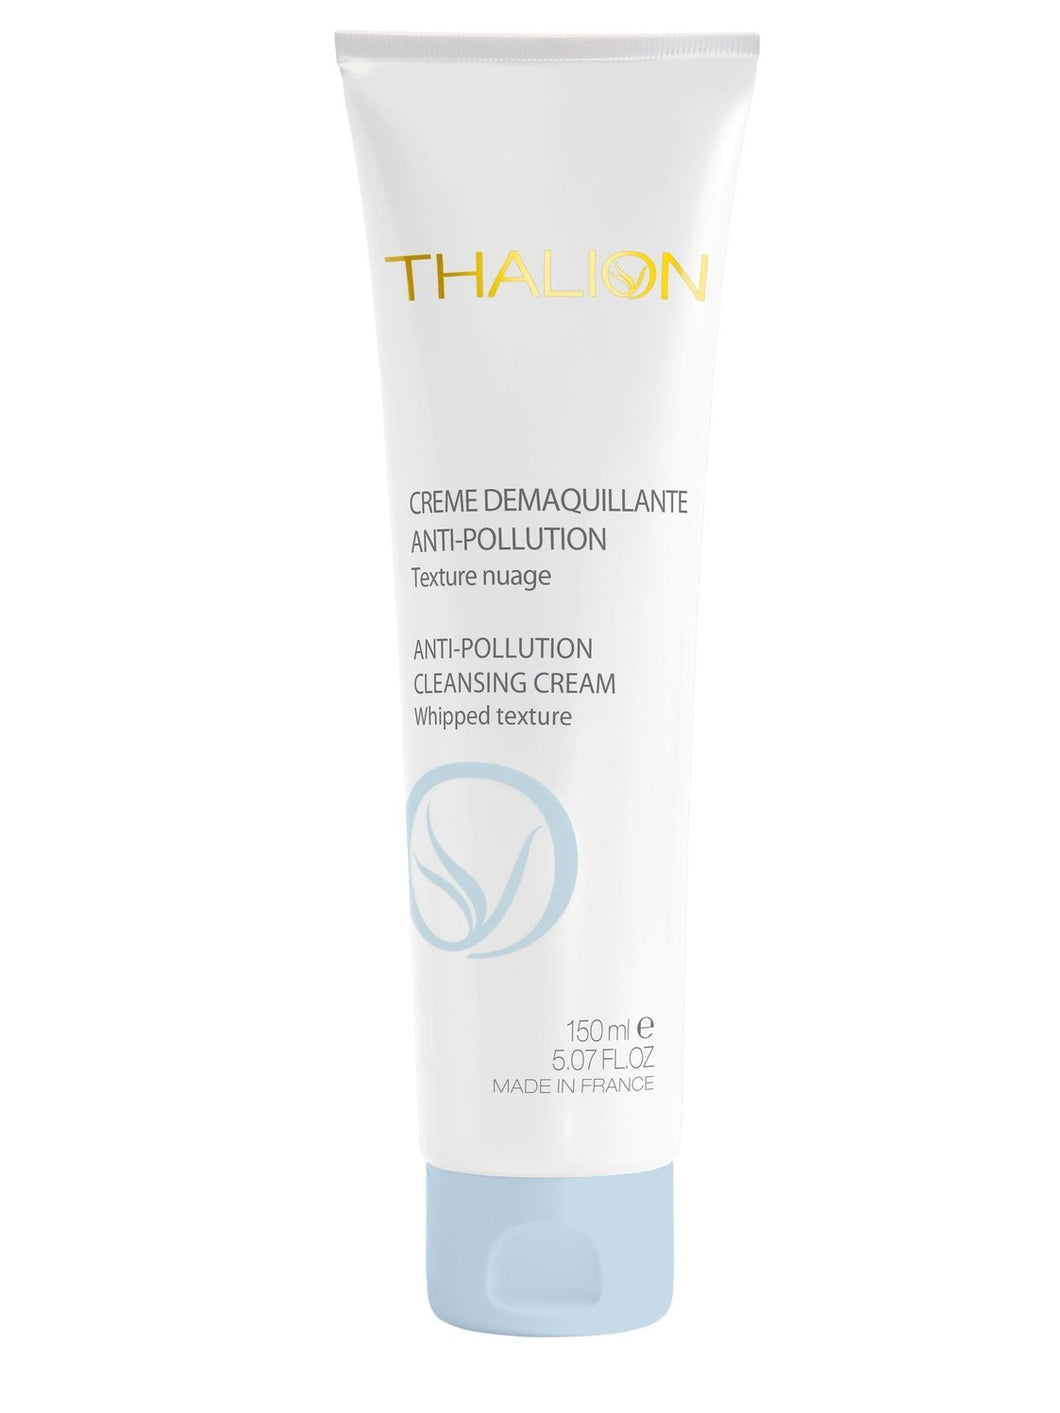 Crème Démaquillante Anti-Pollution - Thalion